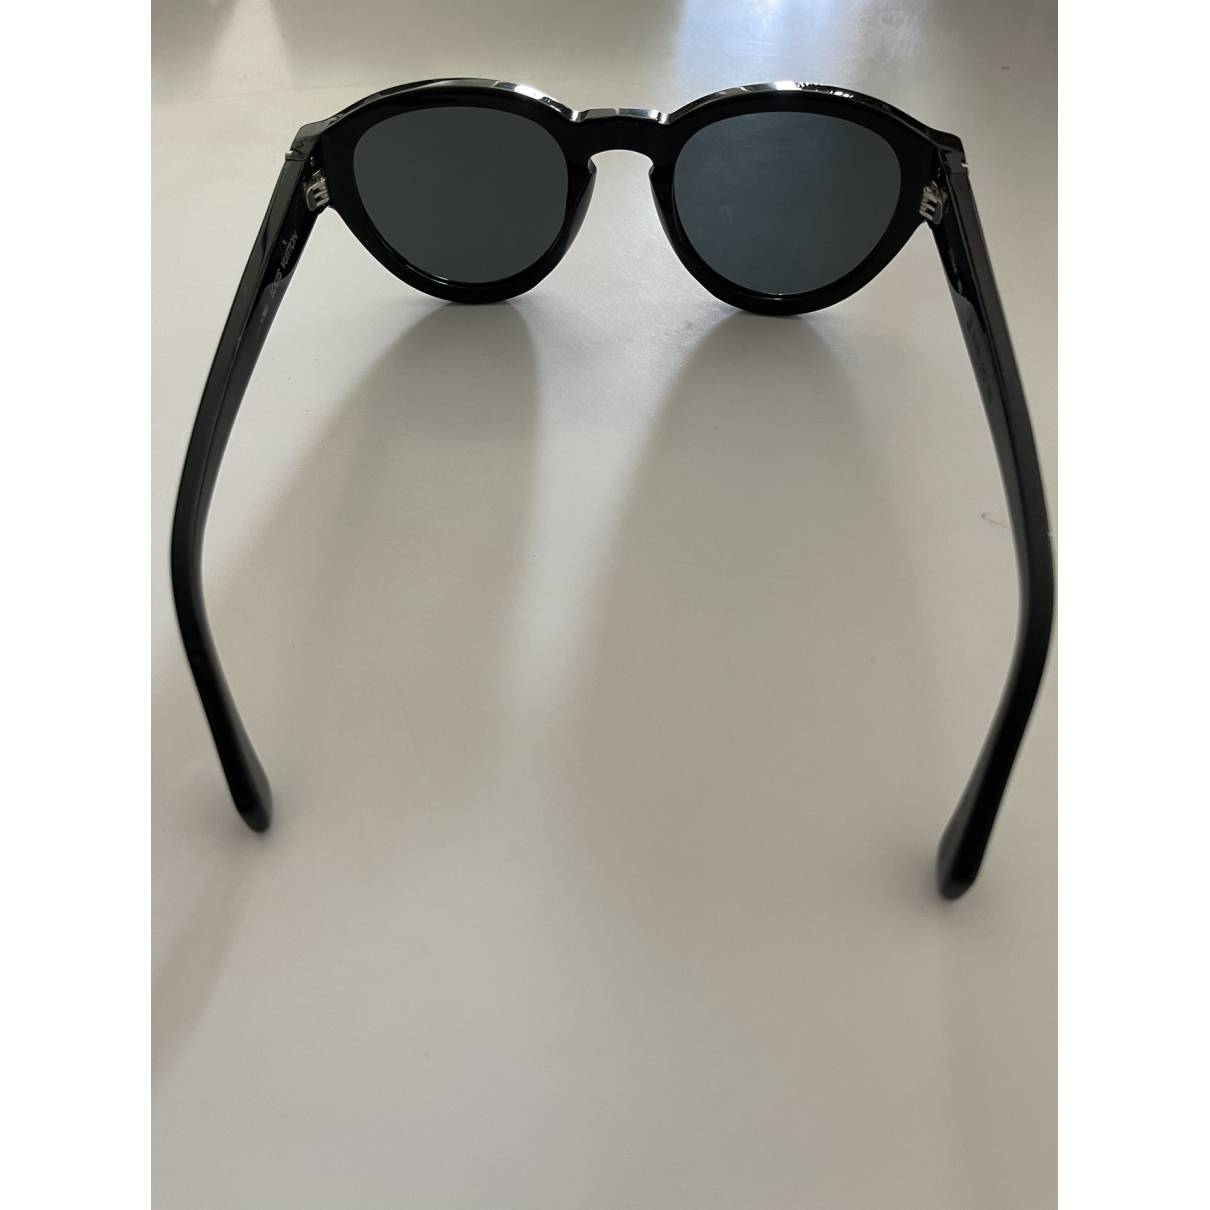 Sunglasses Louis Vuitton Black in Plastic - 24815482